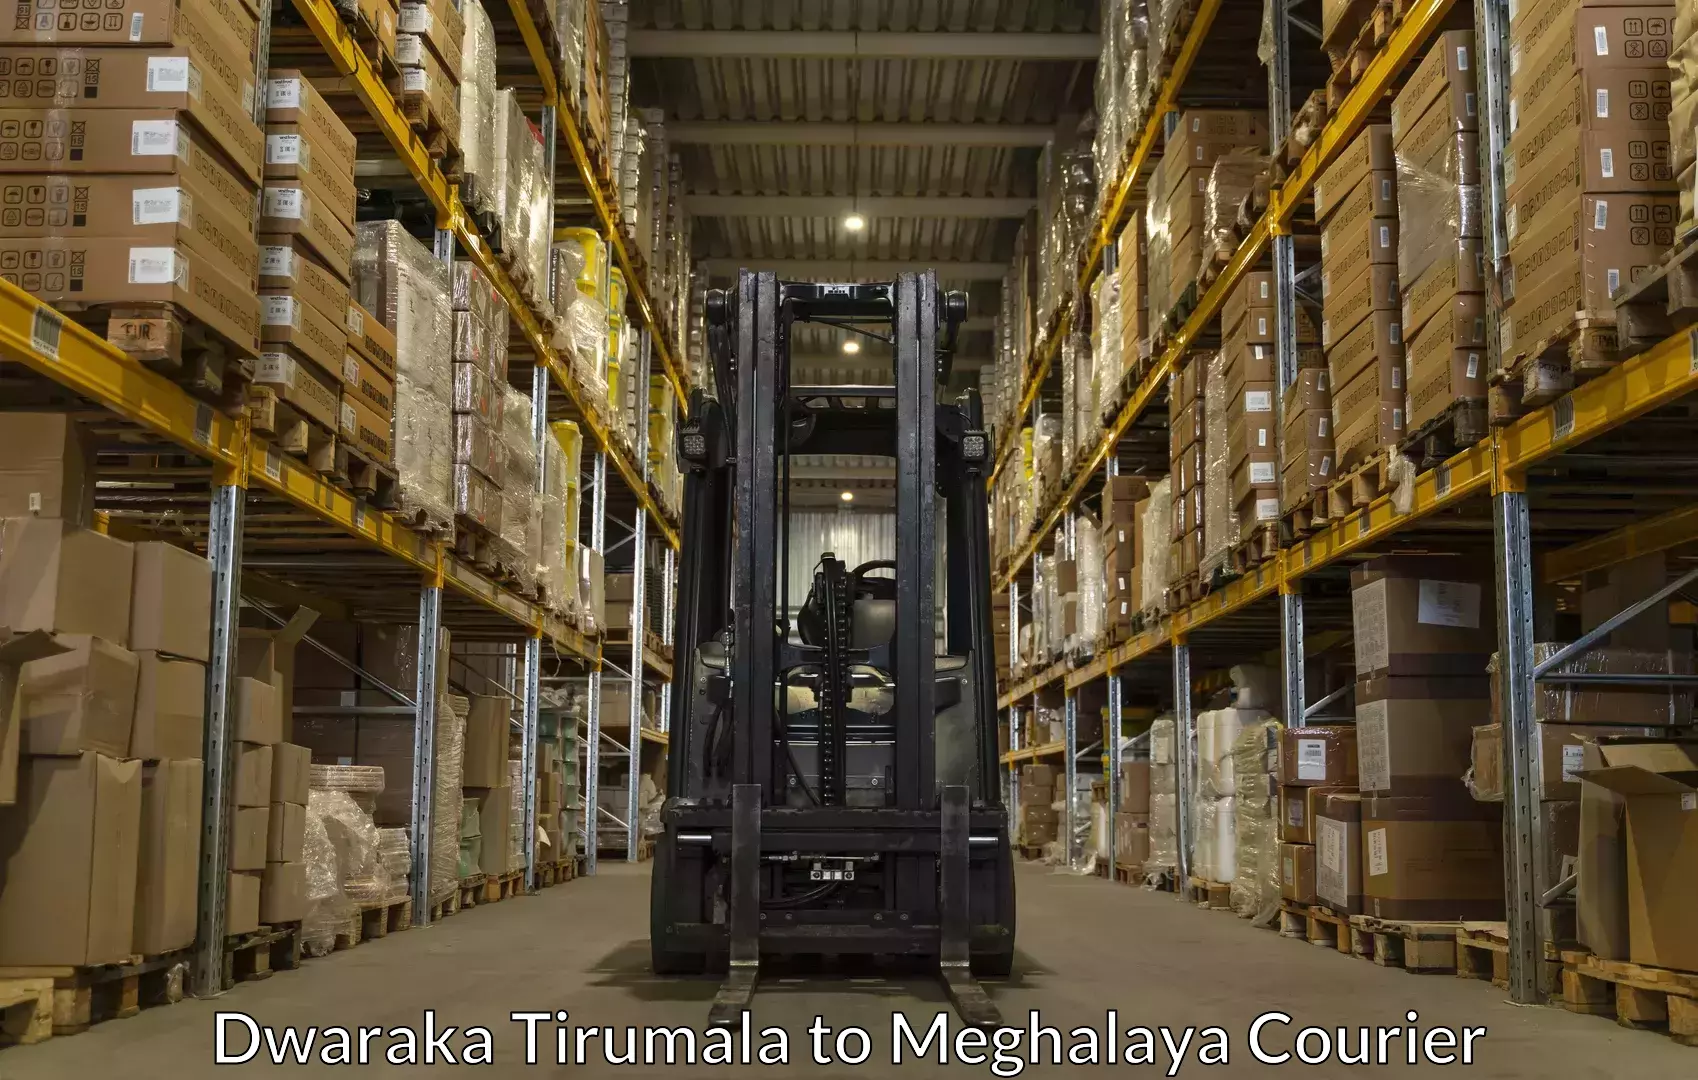 Professional moving company Dwaraka Tirumala to Meghalaya